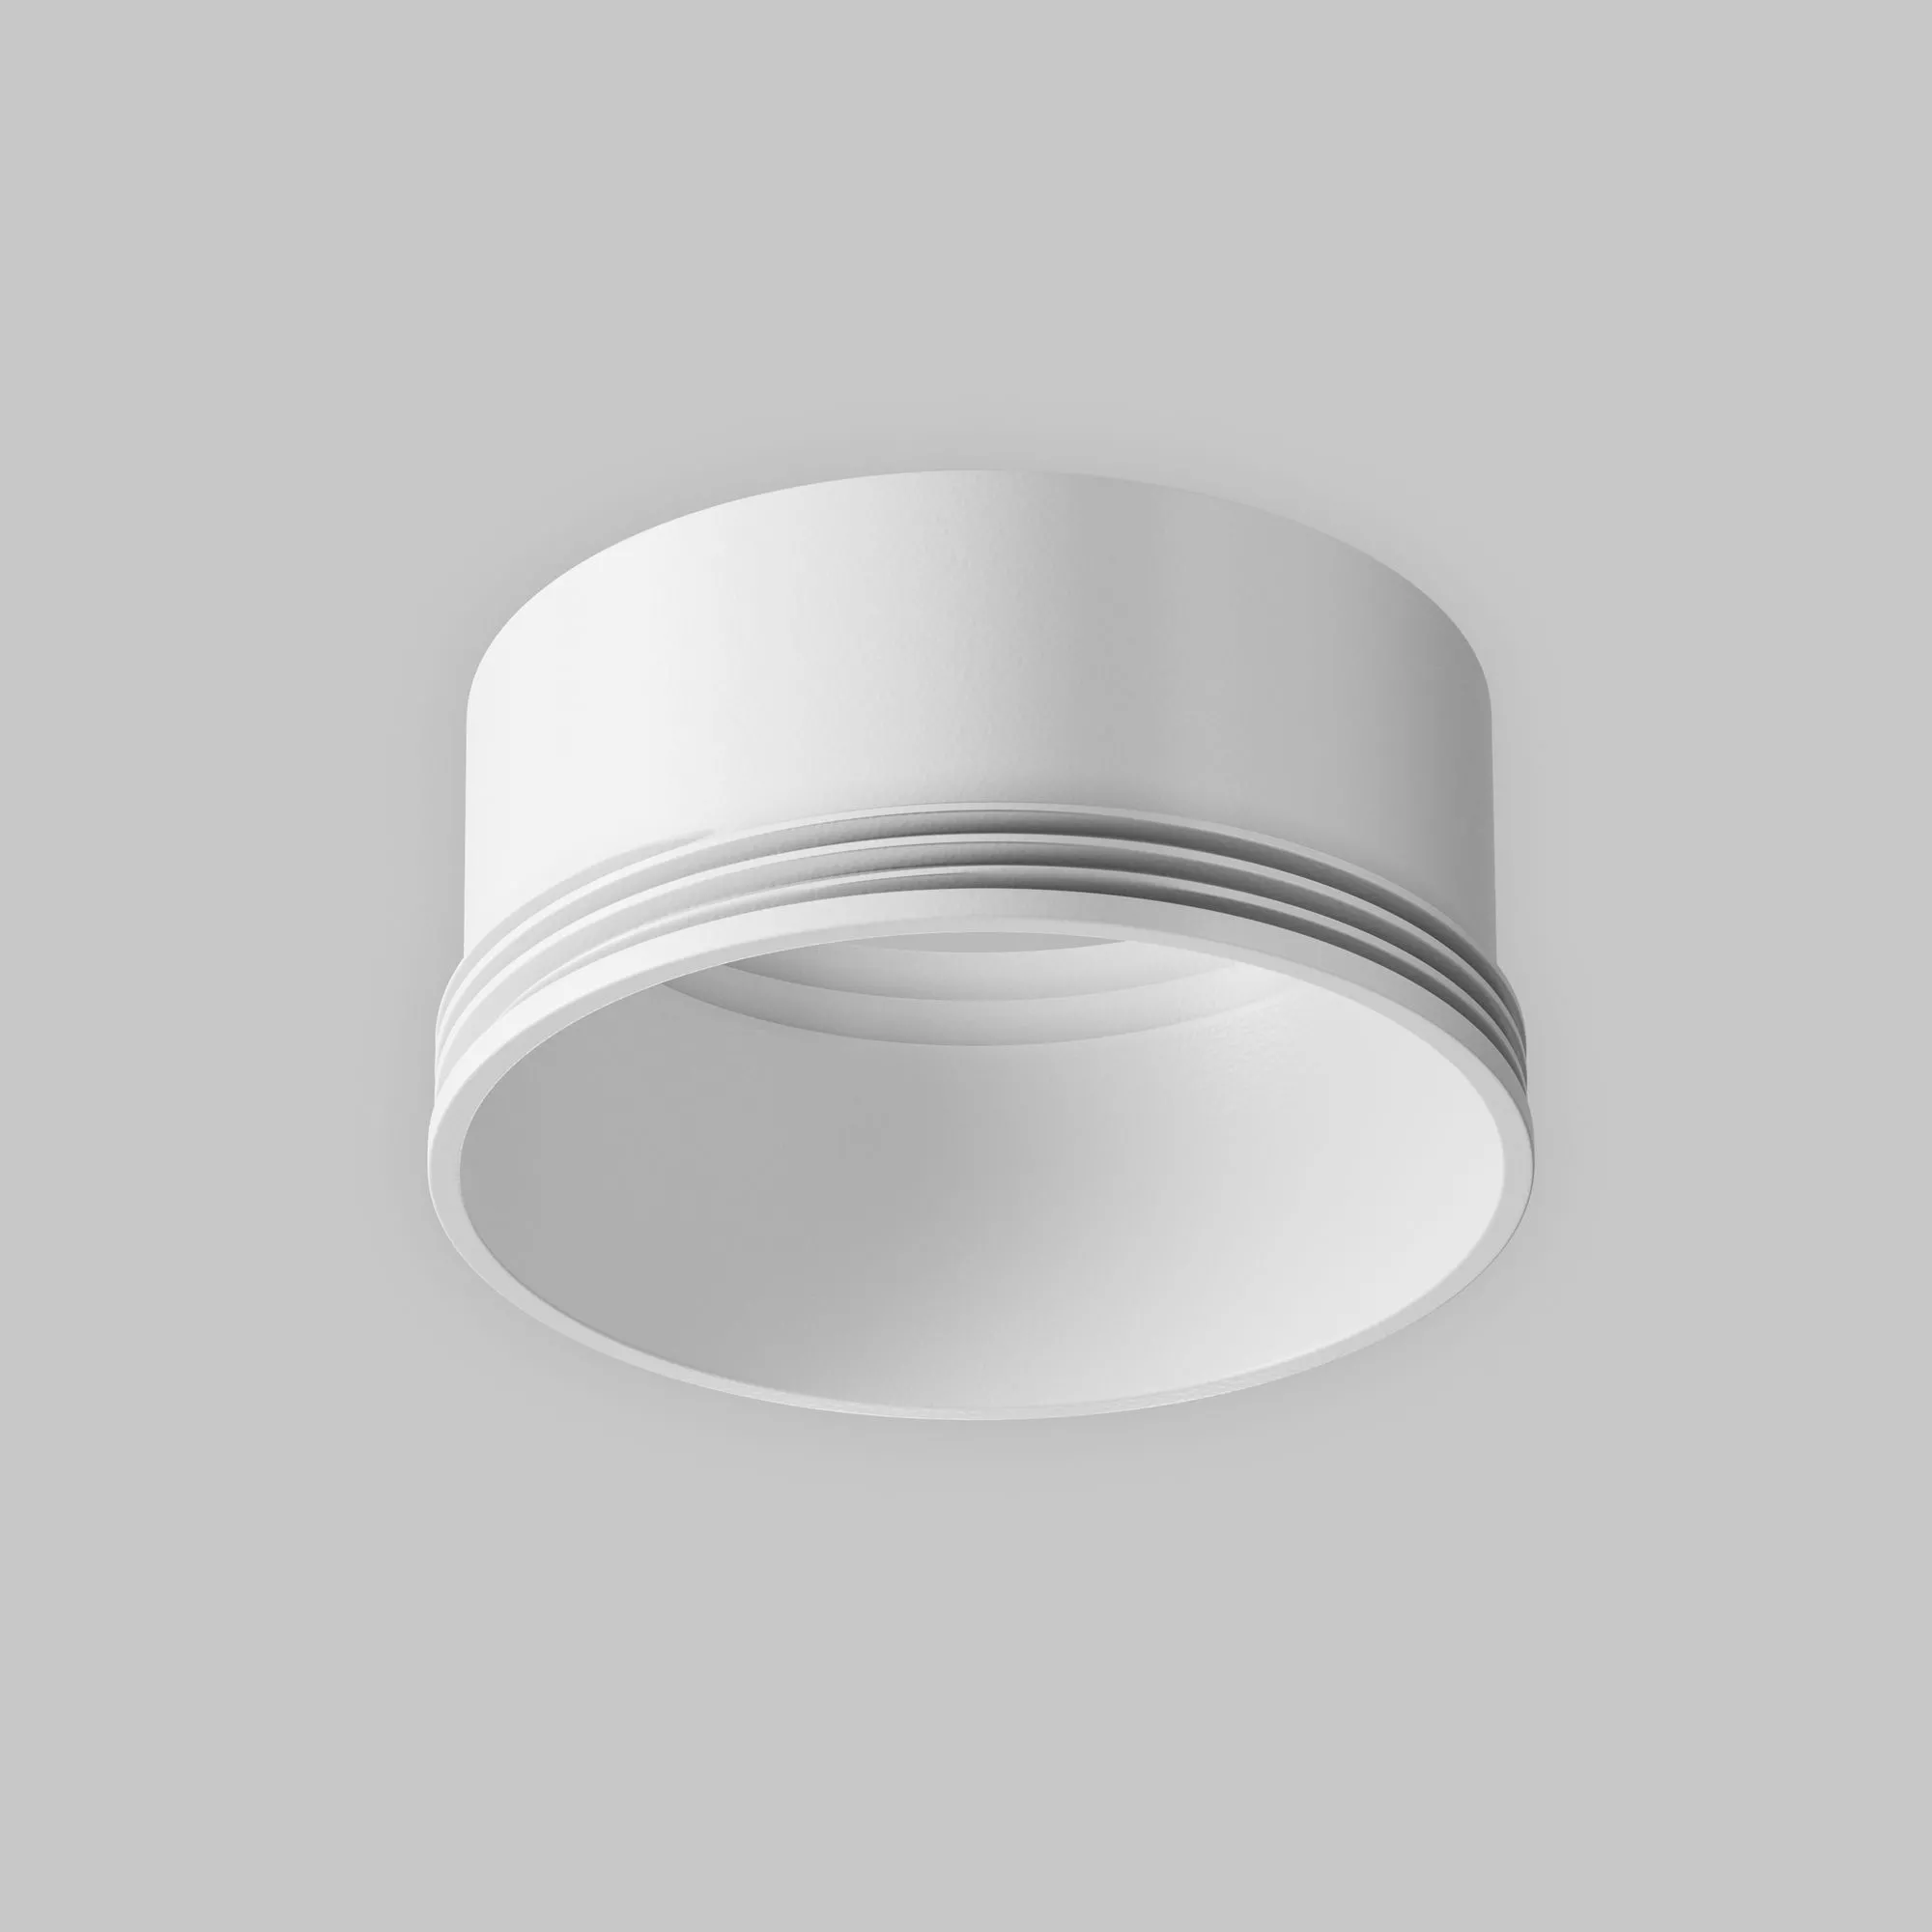 Кольцо декоративное Maytoni Focus LED  RingM-12-W